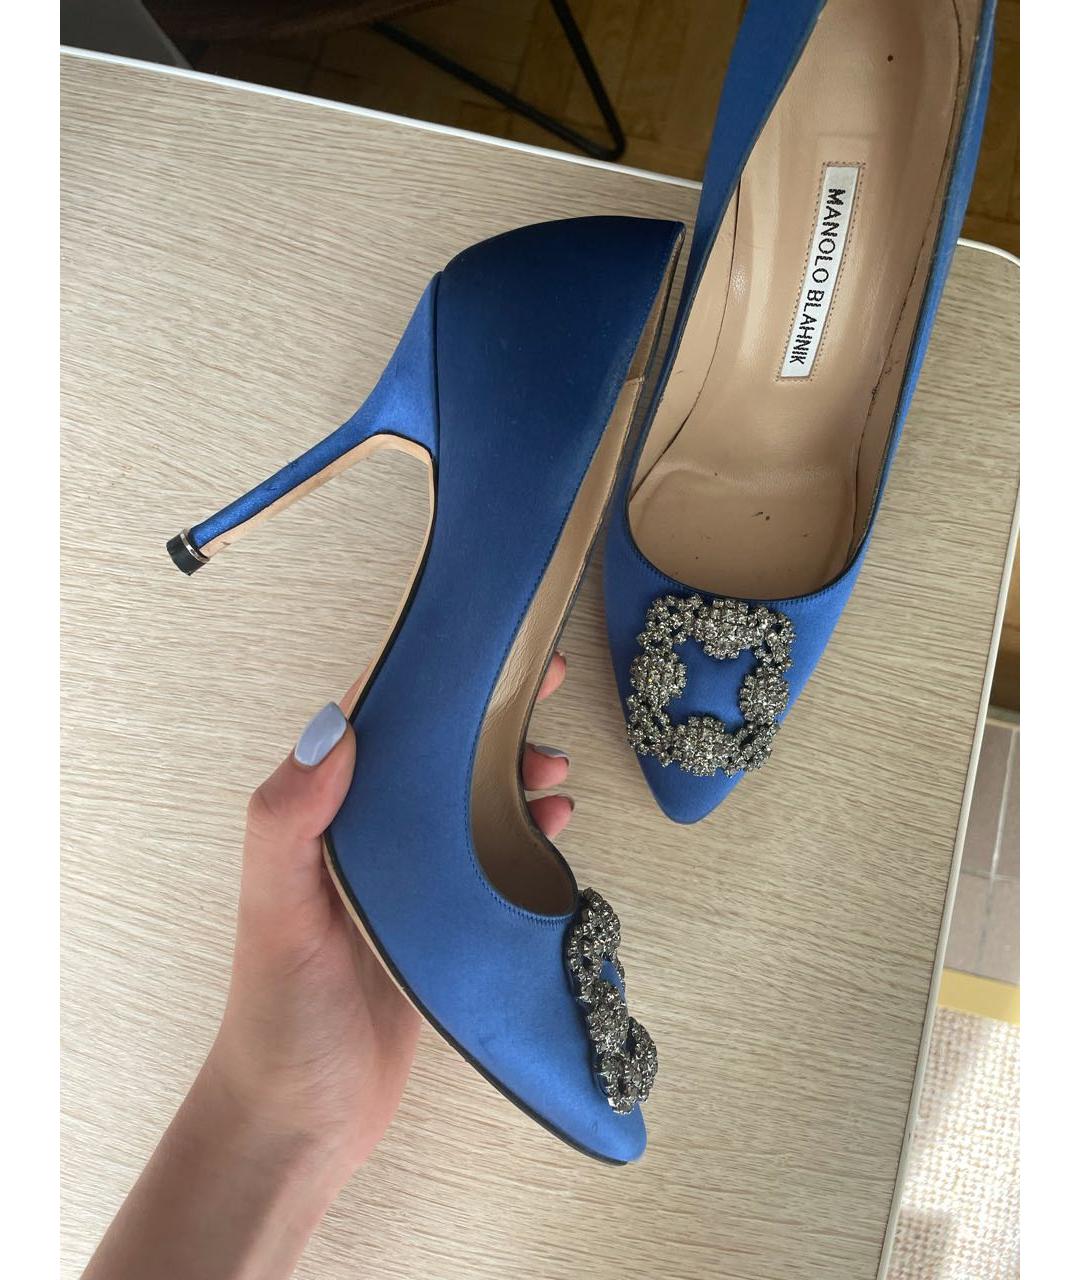 MANOLO BLAHNIK Синие бархатные туфли, фото 2